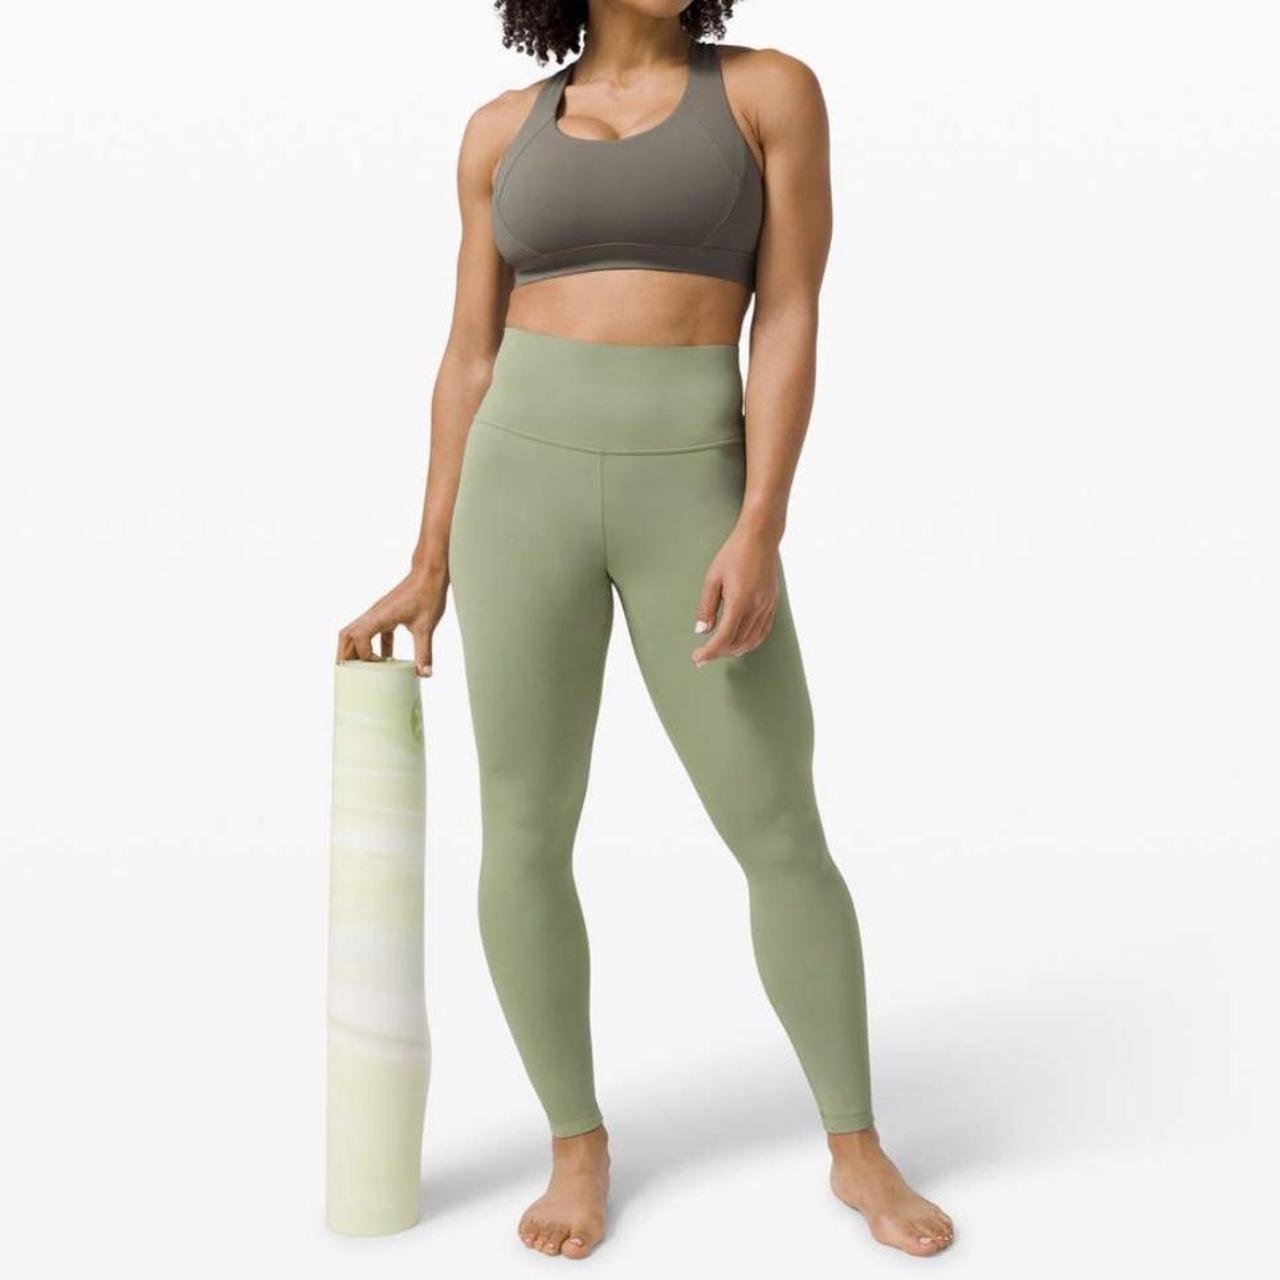 Lululemon 25” willow green align legging. Size 0, - Depop